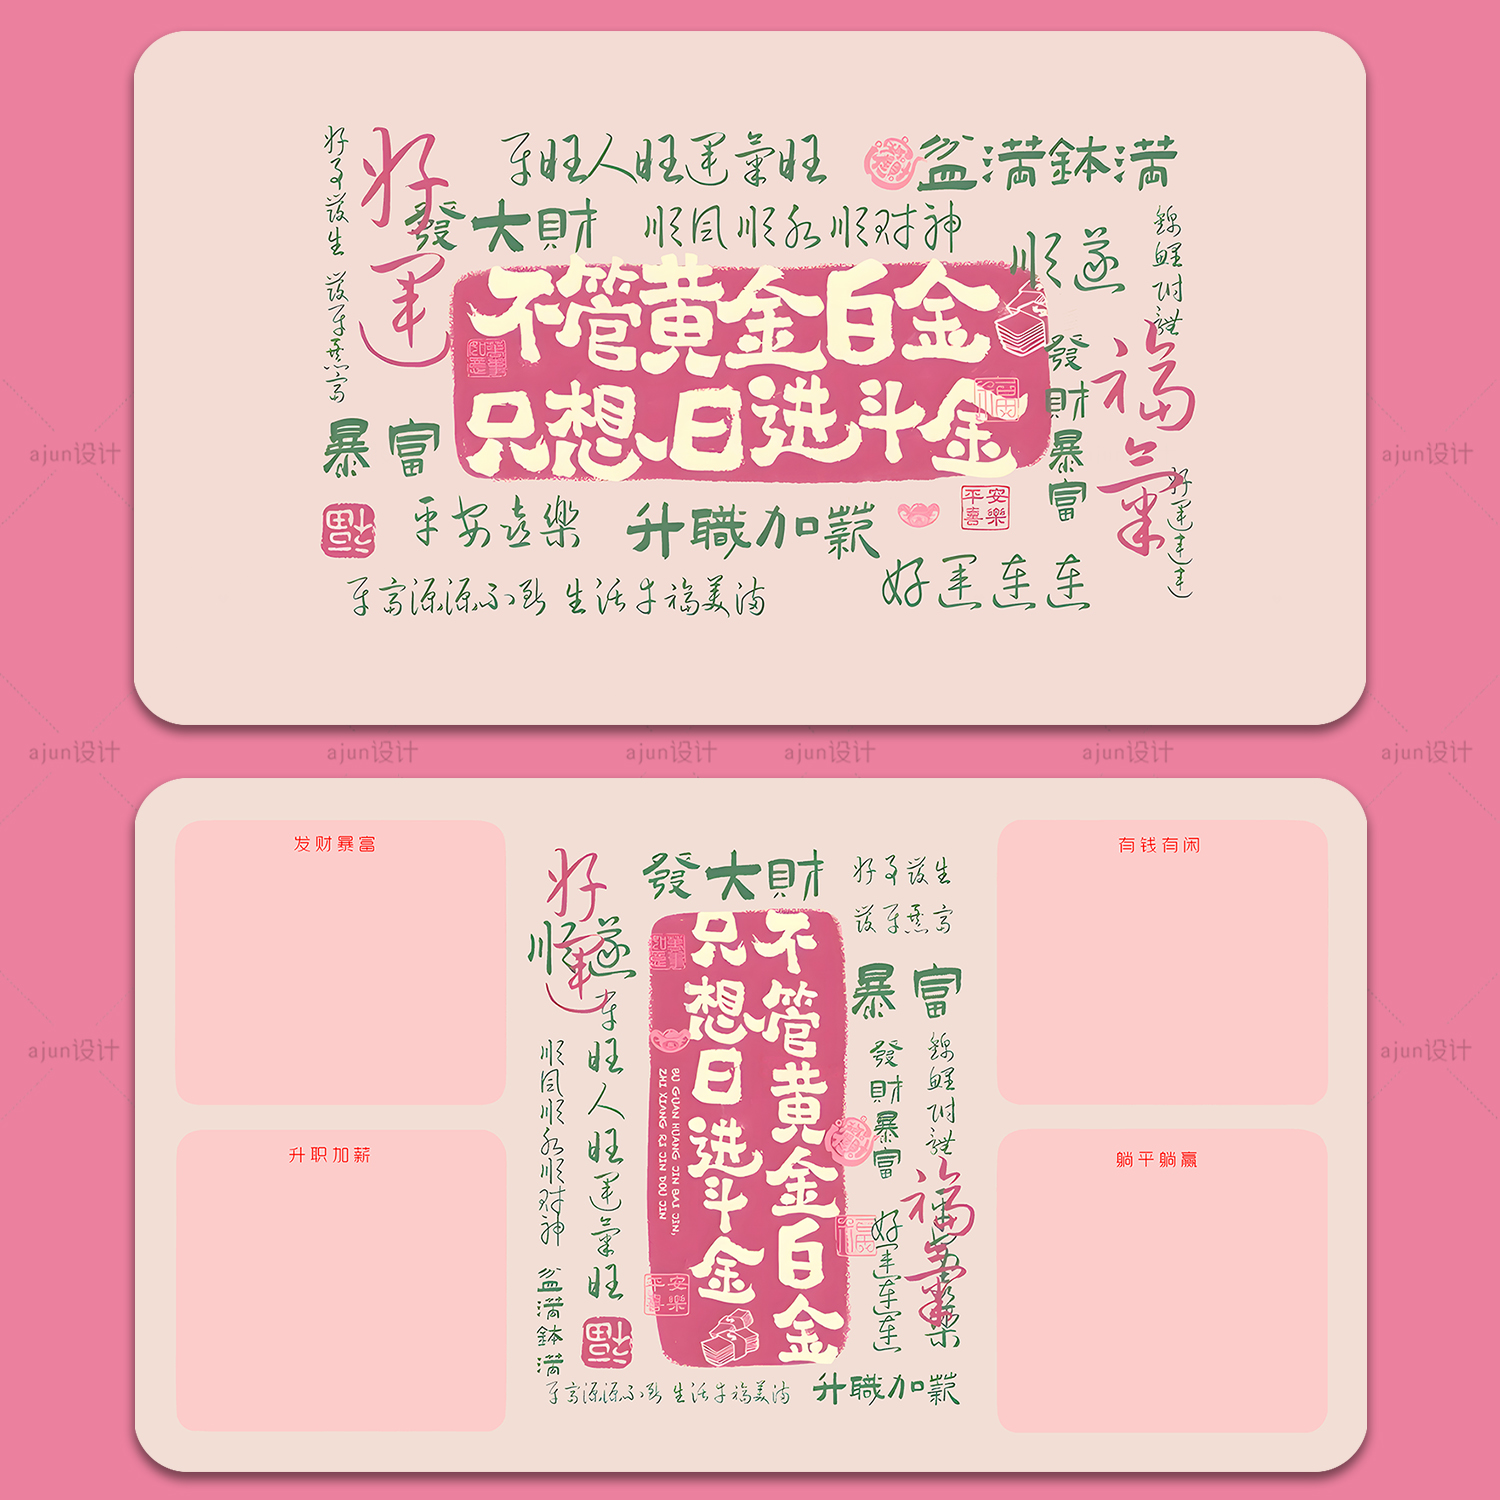 电脑壁纸4k高清粉色发财文字分区款个性化背景桌面图像锁屏界面